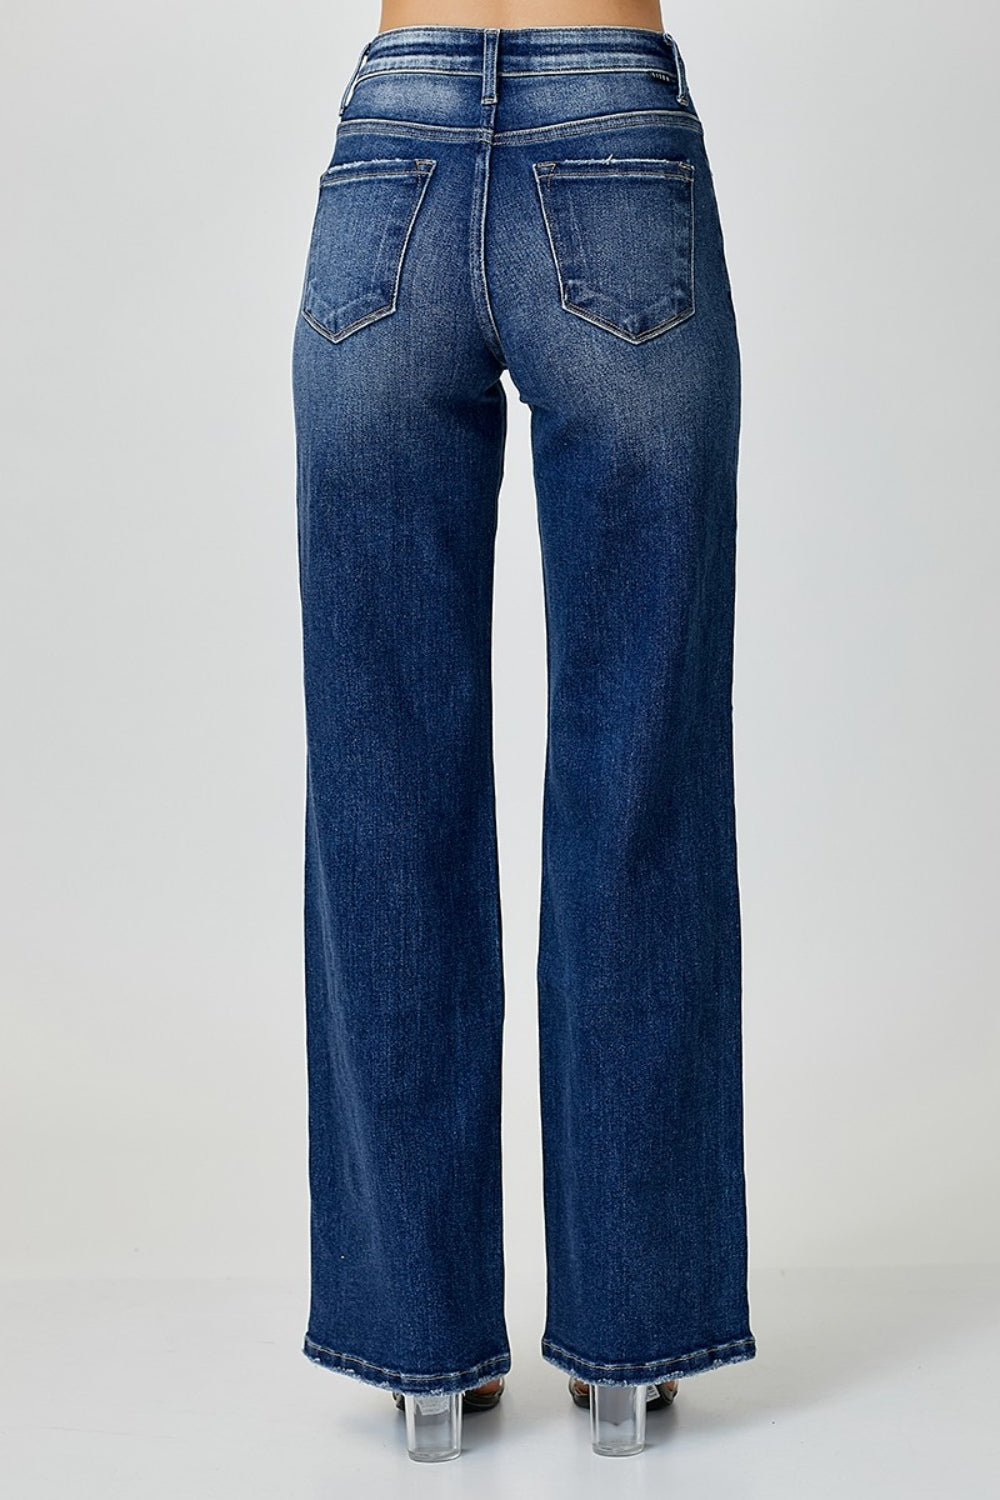 Blue Jeans Mid Rise Straight Leg Women's Denim Pants Cotton